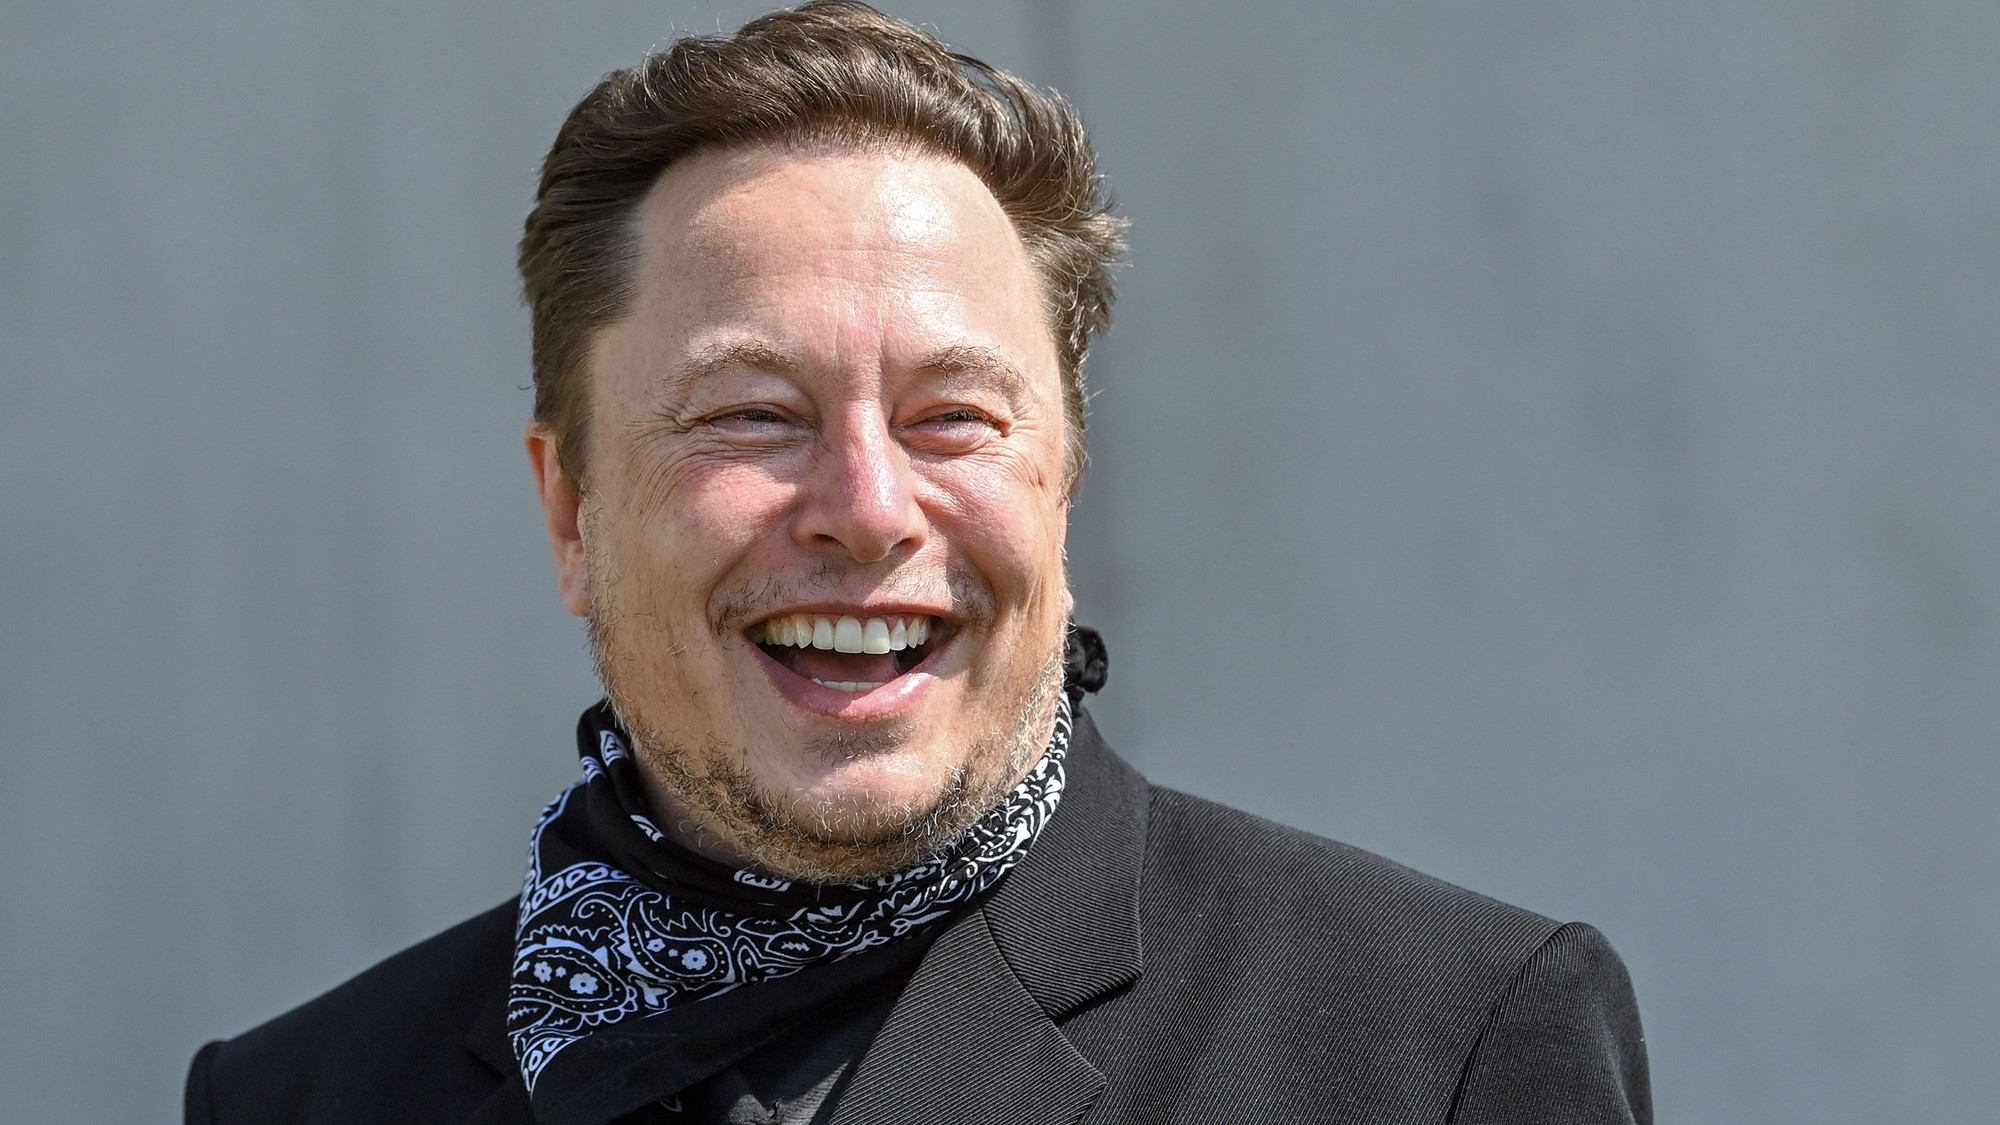 Tỷ phú Elon Musk lấy lại vị trí người giàu nhất thế giới - Ảnh 1.